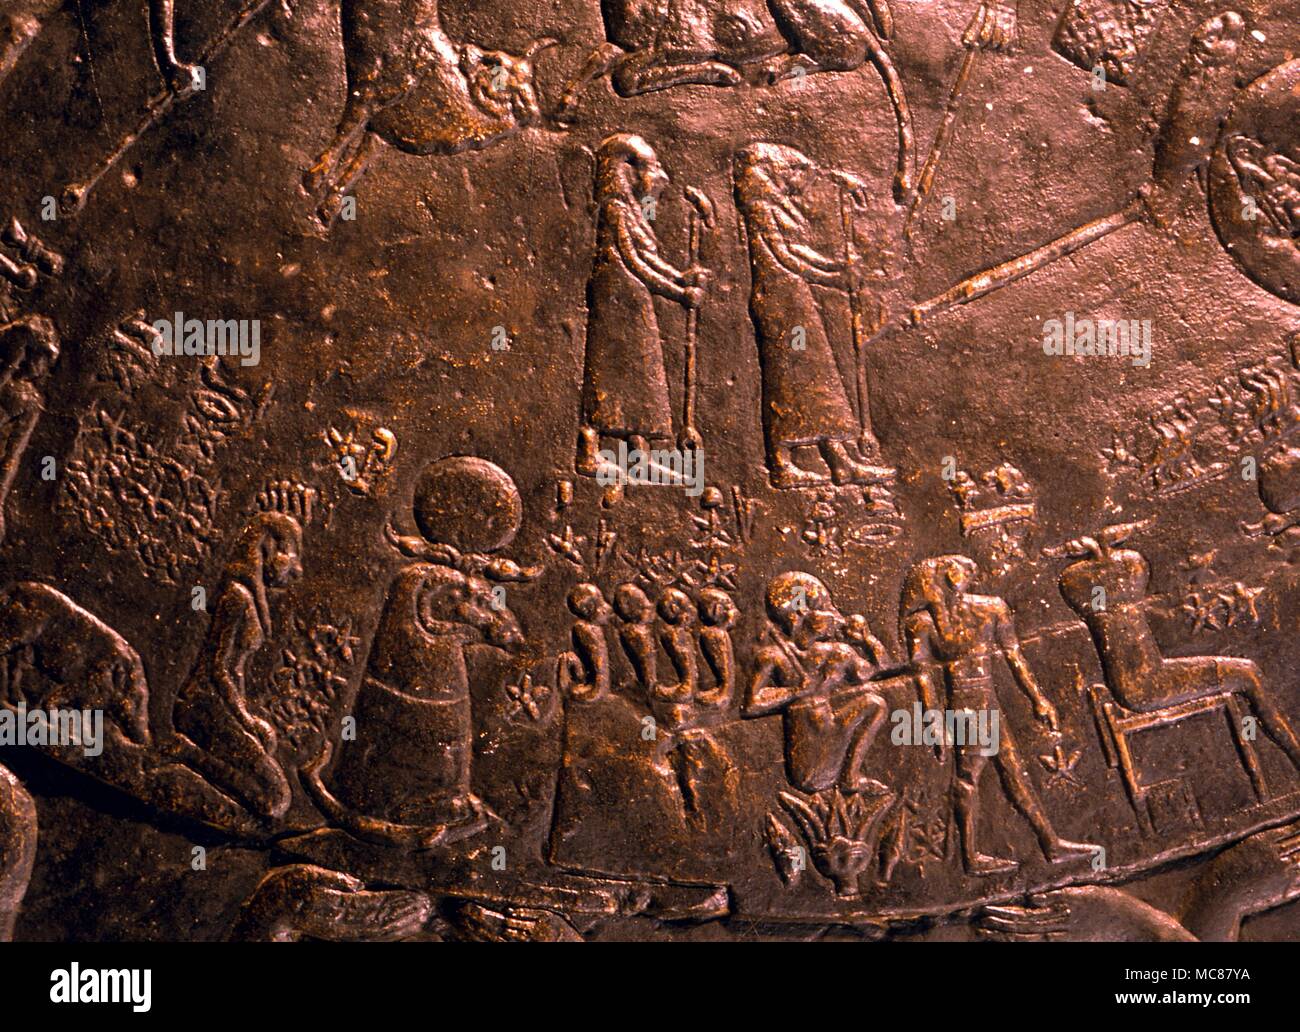 Astrologia egiziana Denderah immagine della Costellazione di Gemini zodiacale come una coppia di letti singoli sacerdoti sul soffitto mappa di costellazione nella camera superiore sul tetto del tempio di Hathor Denderah Foto Stock